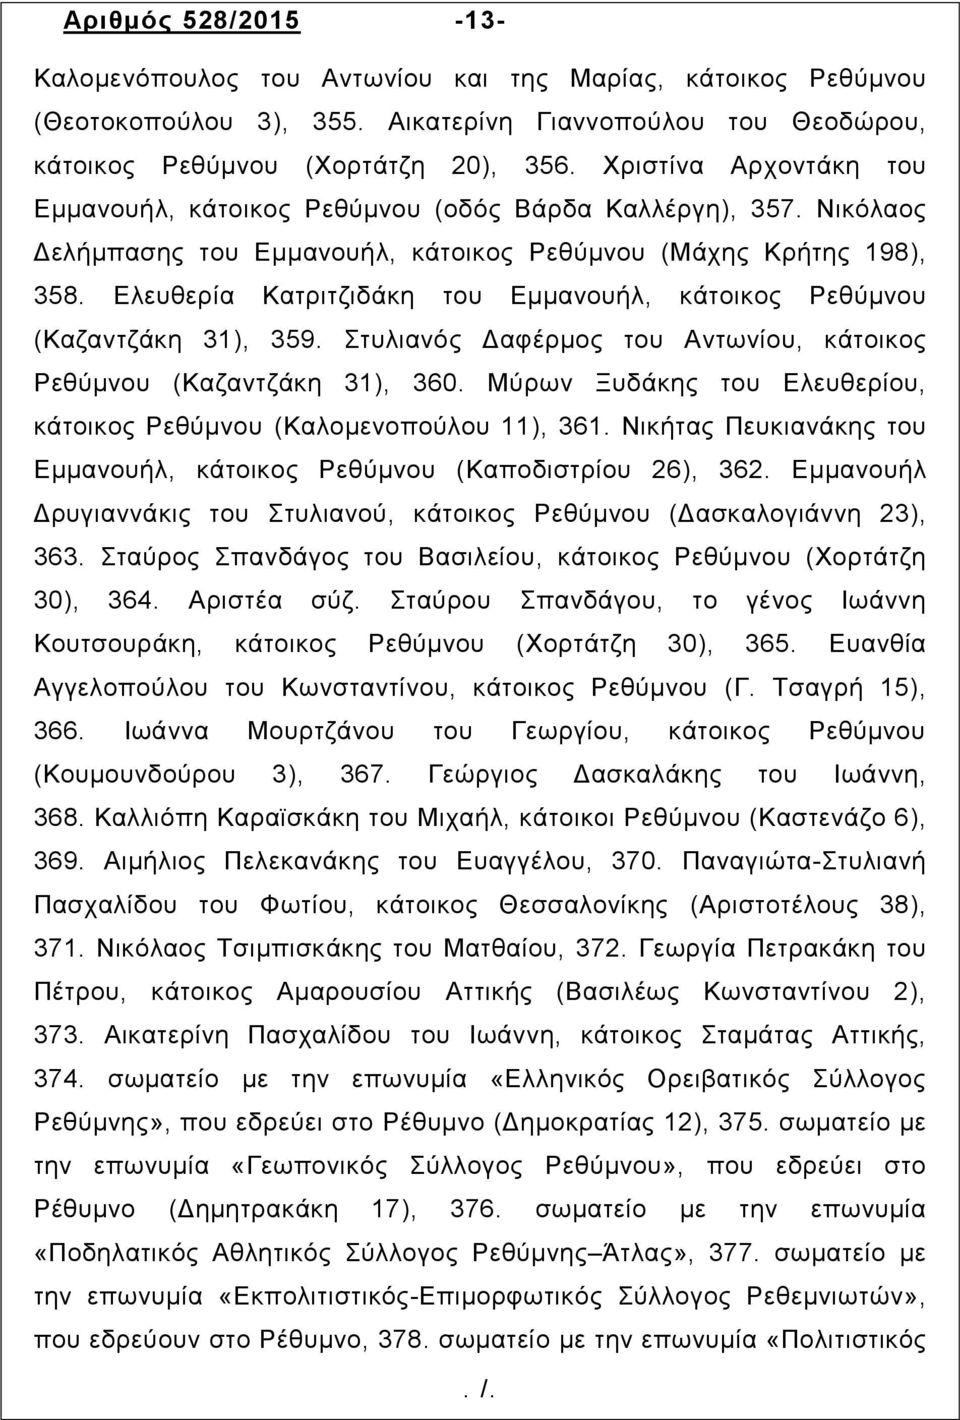 Ελευθερία Κατριτζιδάκη του Εμμανουήλ, κάτοικος Ρεθύµνου (Καζαντζάκη 31), 359. Στυλιανός Δαφέρµος του Αντωνίου, κάτοικος Ρεθύµνου (Καζαντζάκη 31), 360.